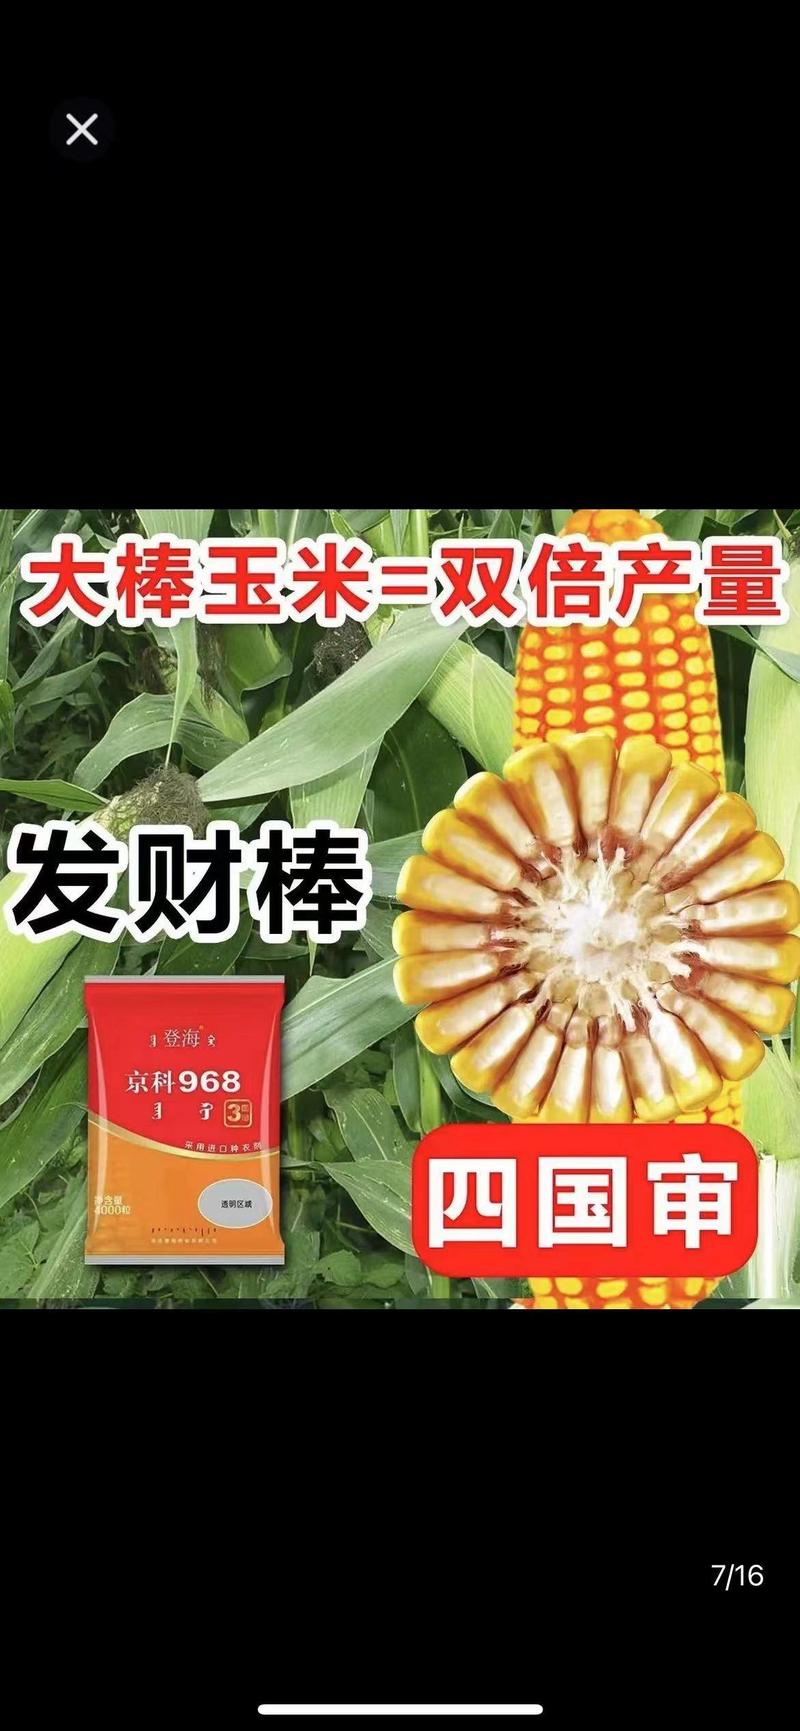 登海京科玉米种子京科968穗长抗倒能力强对接批发商